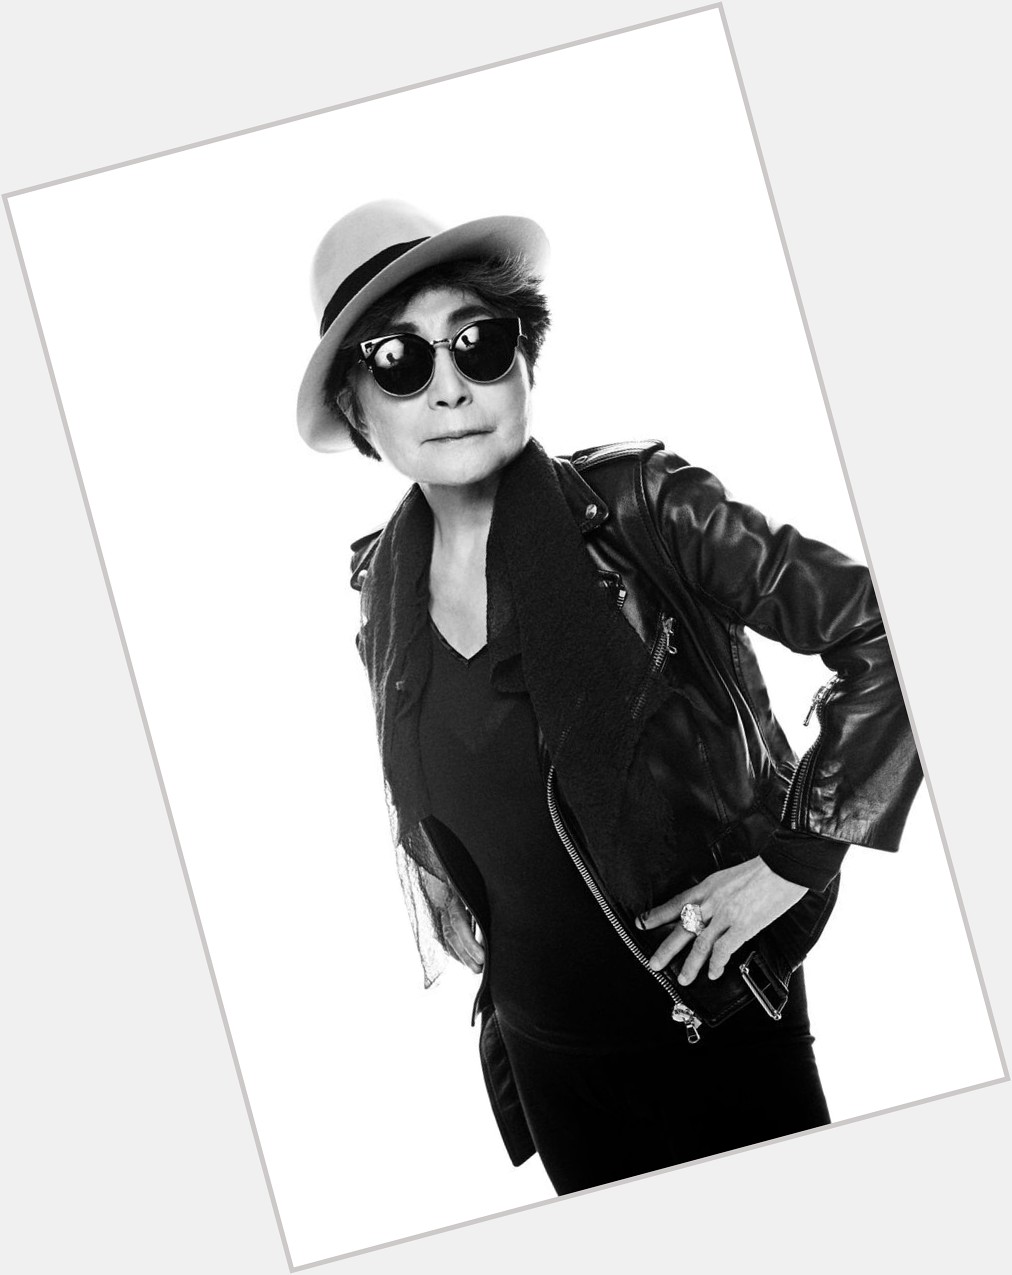 Yoko Ono Lennon Turned to 88th
(February 18,1933)
So Happy Birthday        